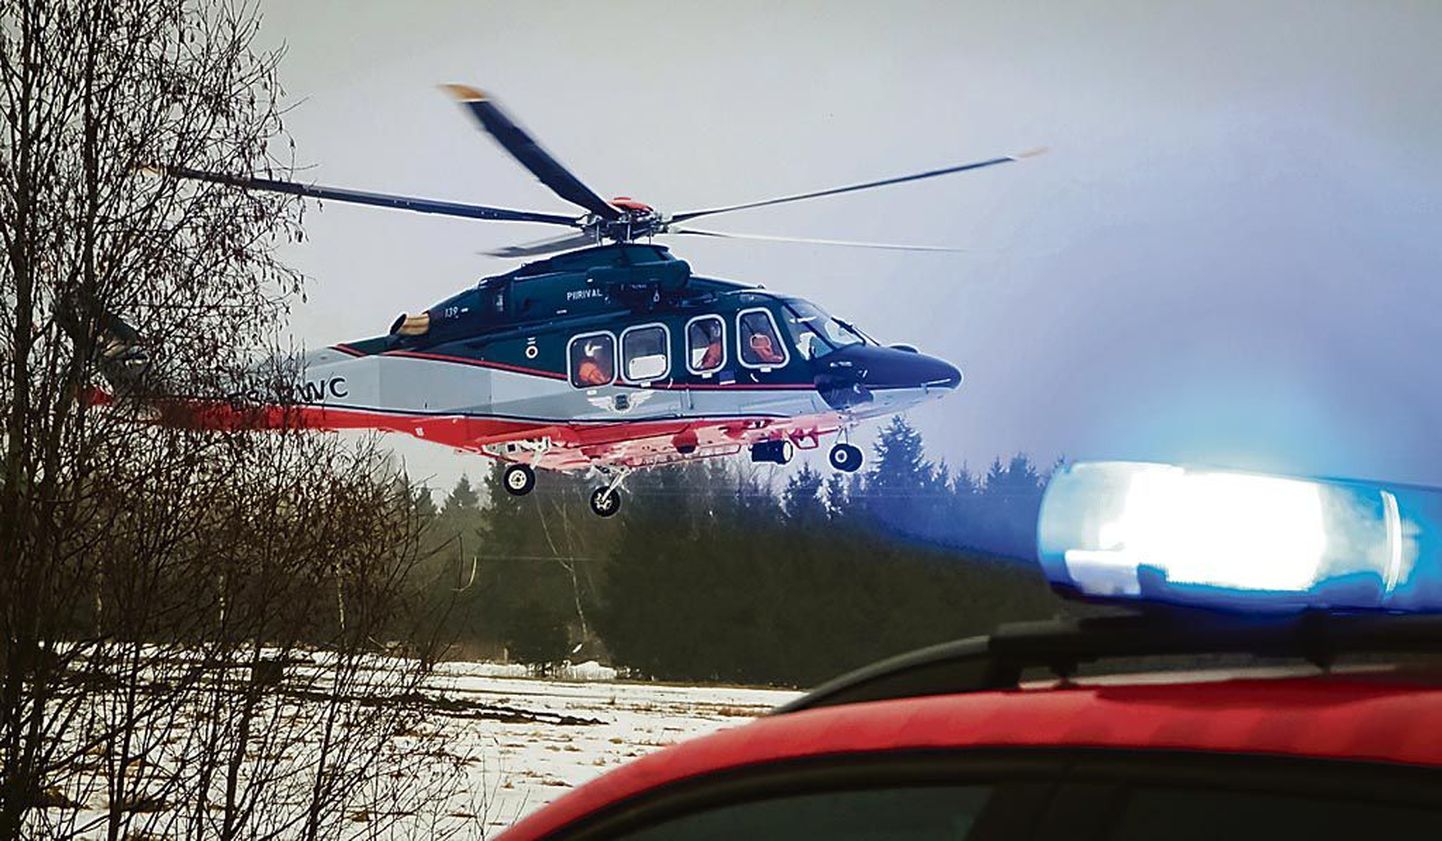 Kuna päästetöödel osalenud lennusalga helikopter ei saanud halbade ilmaolude tõttu maanduda Pärnu haigla kopteriplatsil, telliti kiirabi vastu Audru valda.